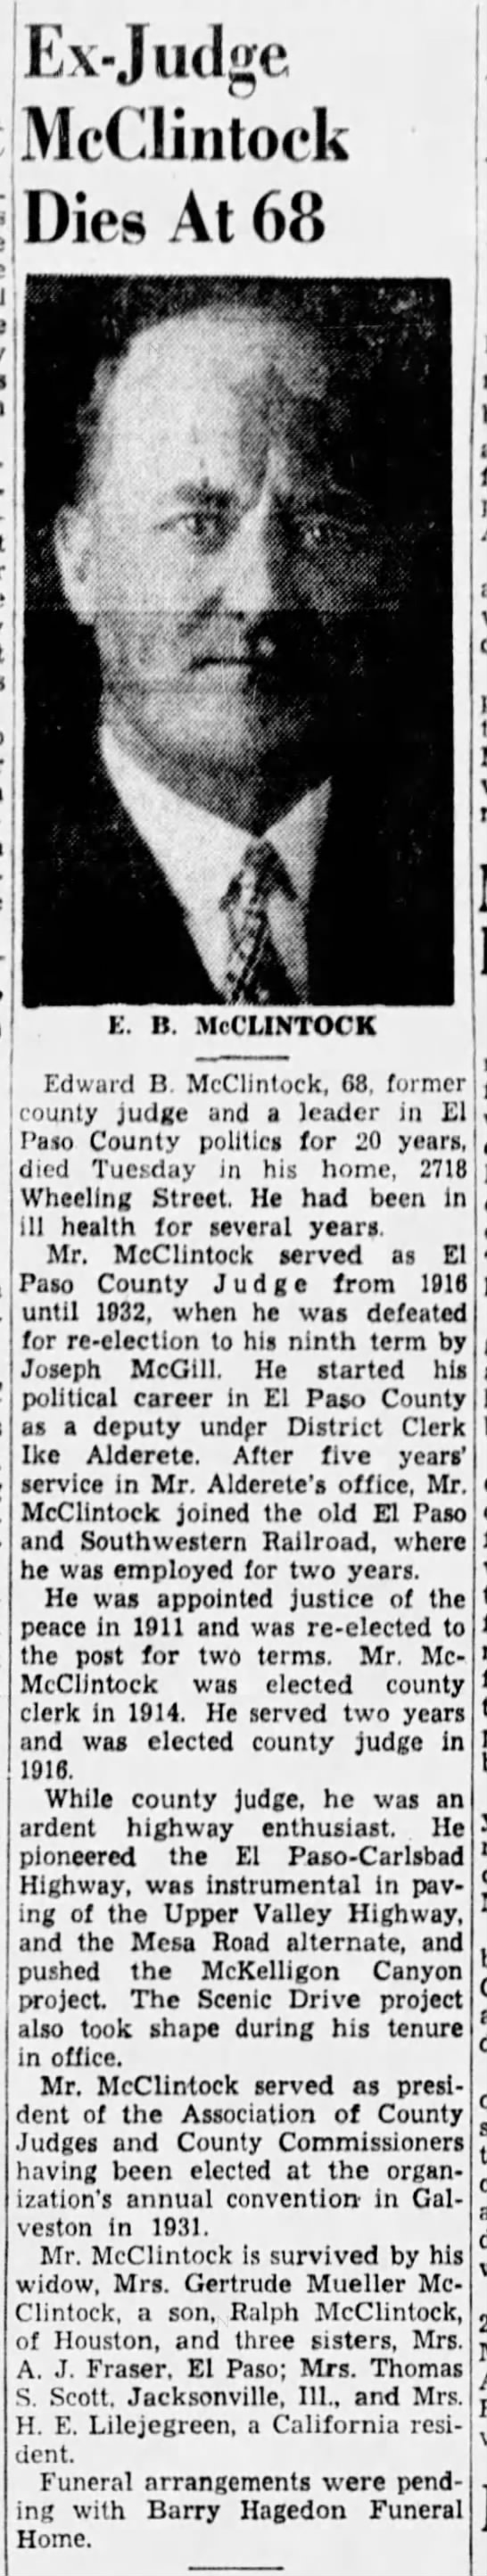 Ex-Judge McClintock Dies at 68 - 